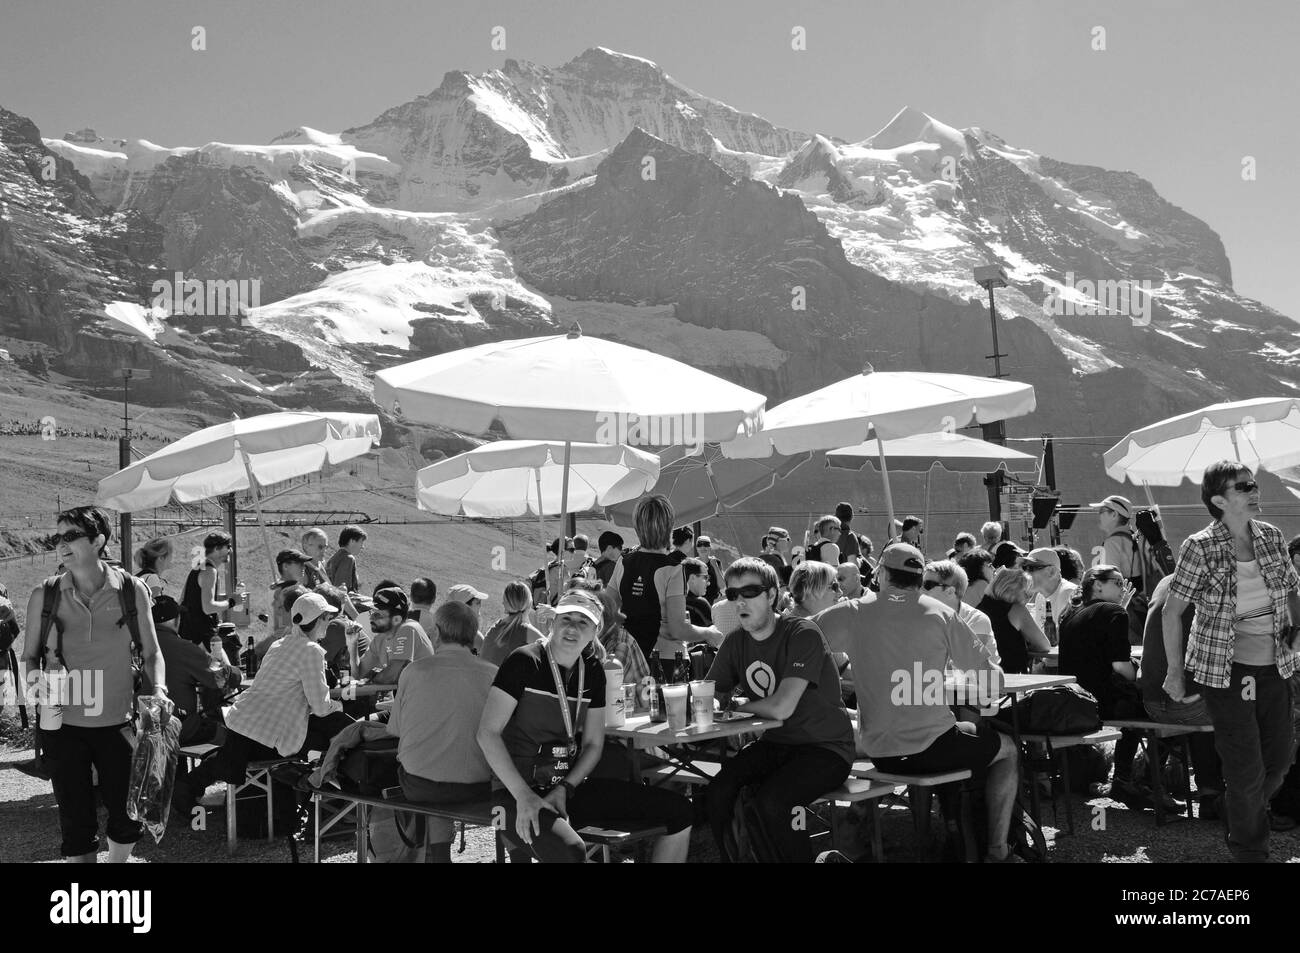 Touristen und Sportler pflegen sich auf der KleineScheidegg am Fusse von Eiger, Mönch und Jungfrau am Jungfraujoch-Marathon Stockfoto